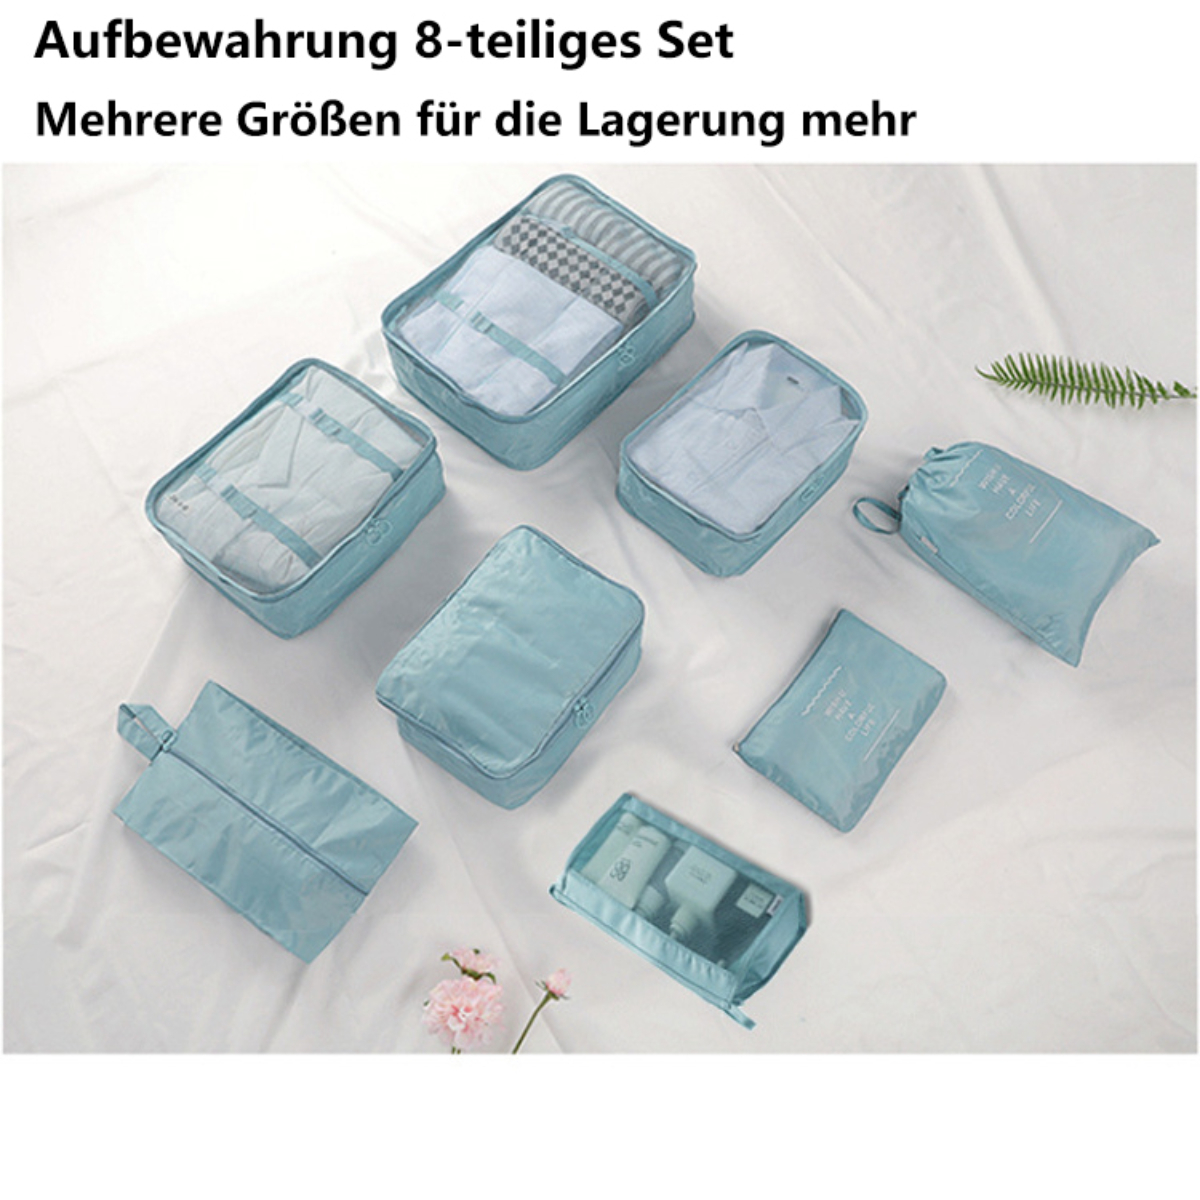 SYNTEK Organizer Set Blau Organizer Bag 8-teilig Blau Organizer Travel Sorting Clothes Travel